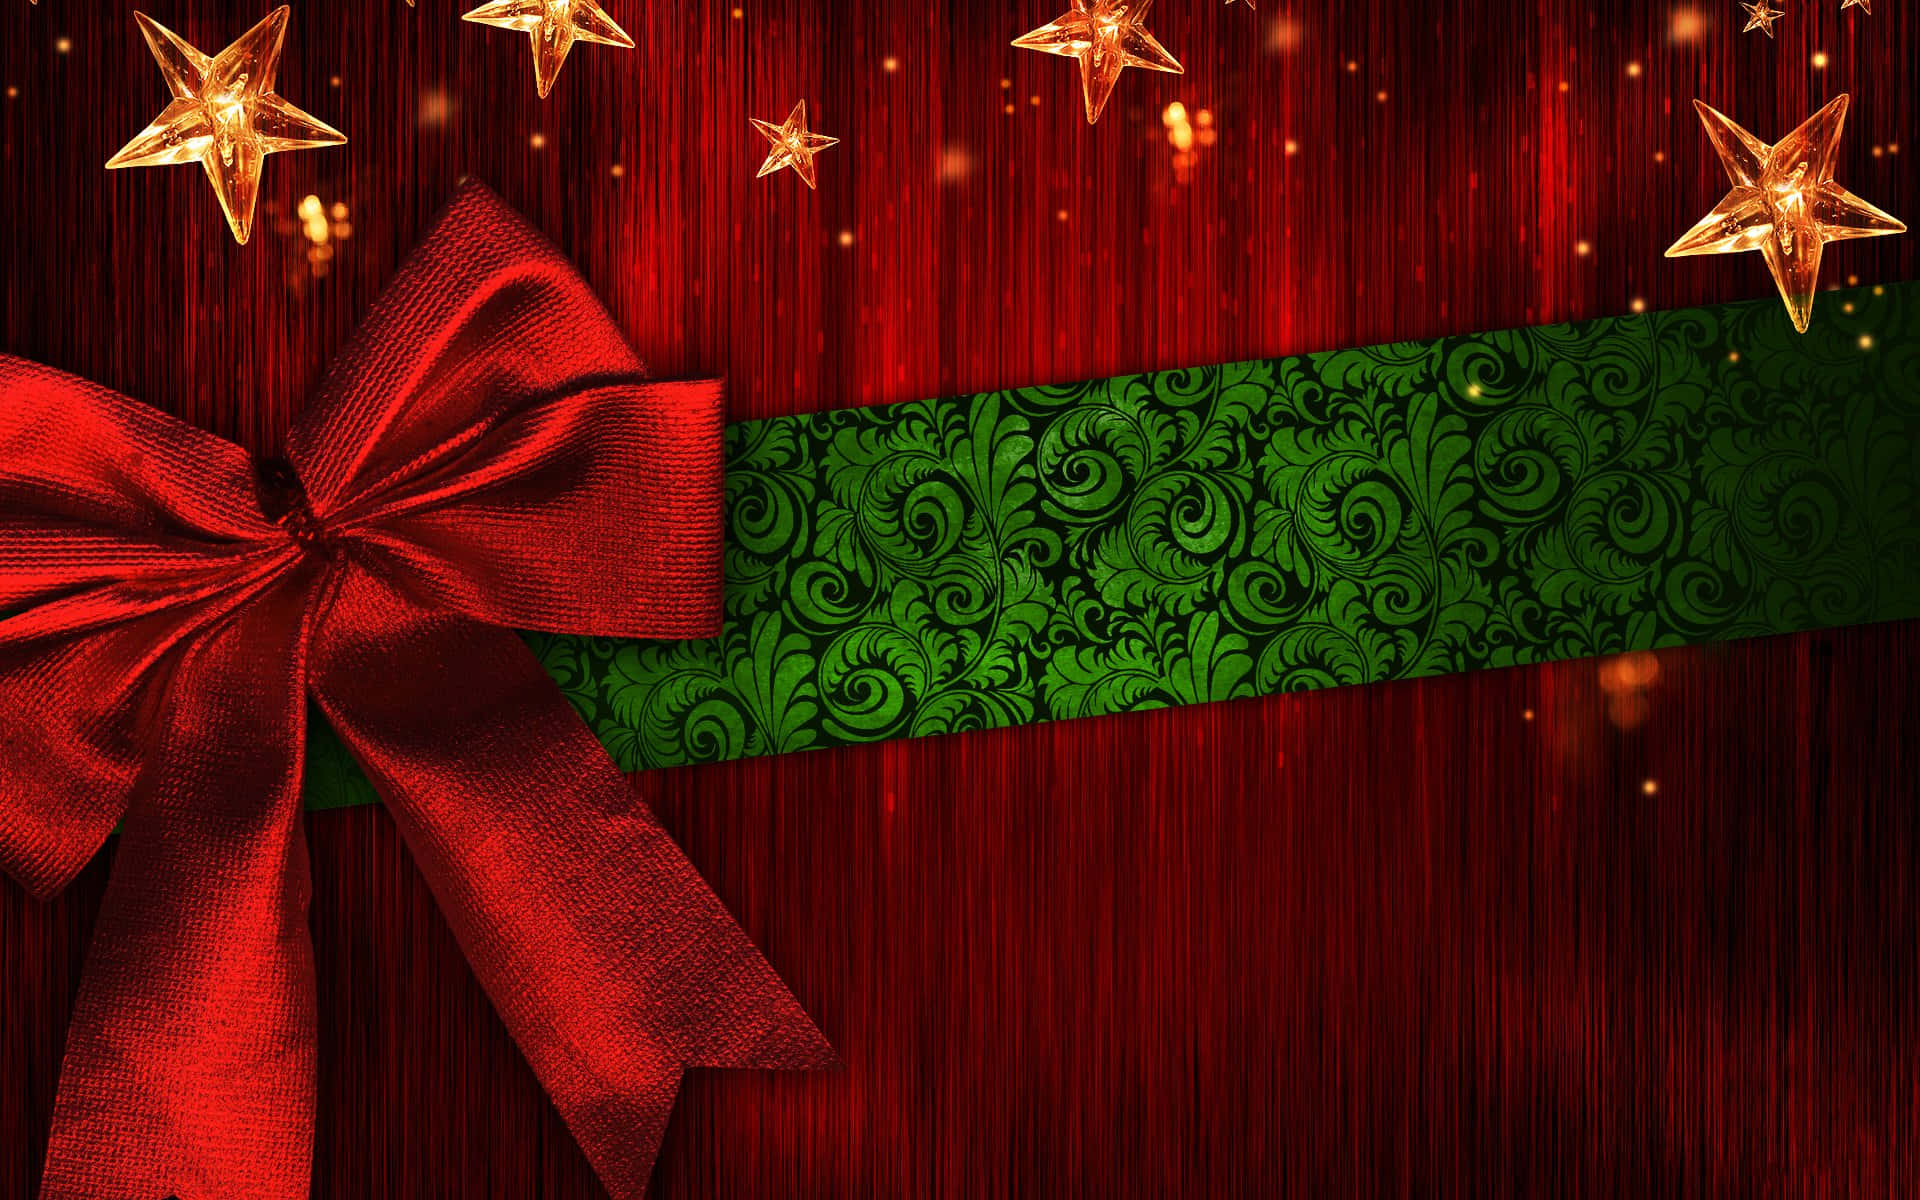 Celebrala Navidad Con La Clásica Combinación De Colores Rojo Y Verde En Tu Fondo De Pantalla De Computadora O Móvil. Fondo de pantalla